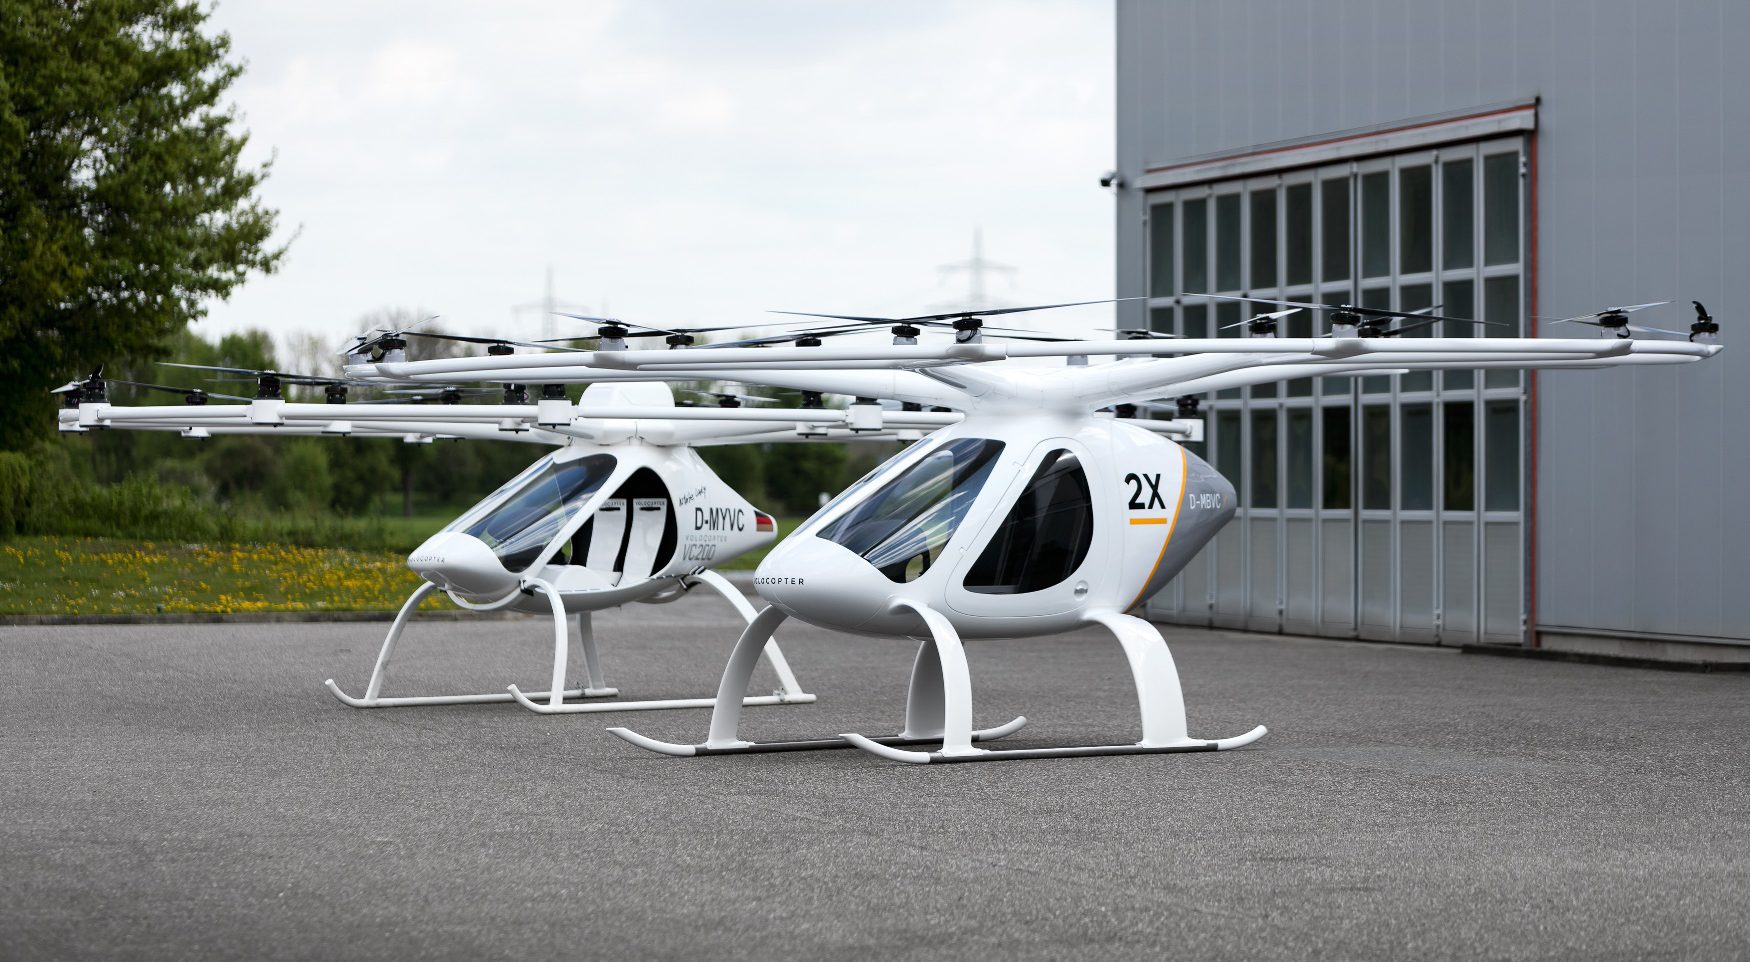 Немецкий стартап Volocopter привлек 200 млн евро в ходе раунда финансирования